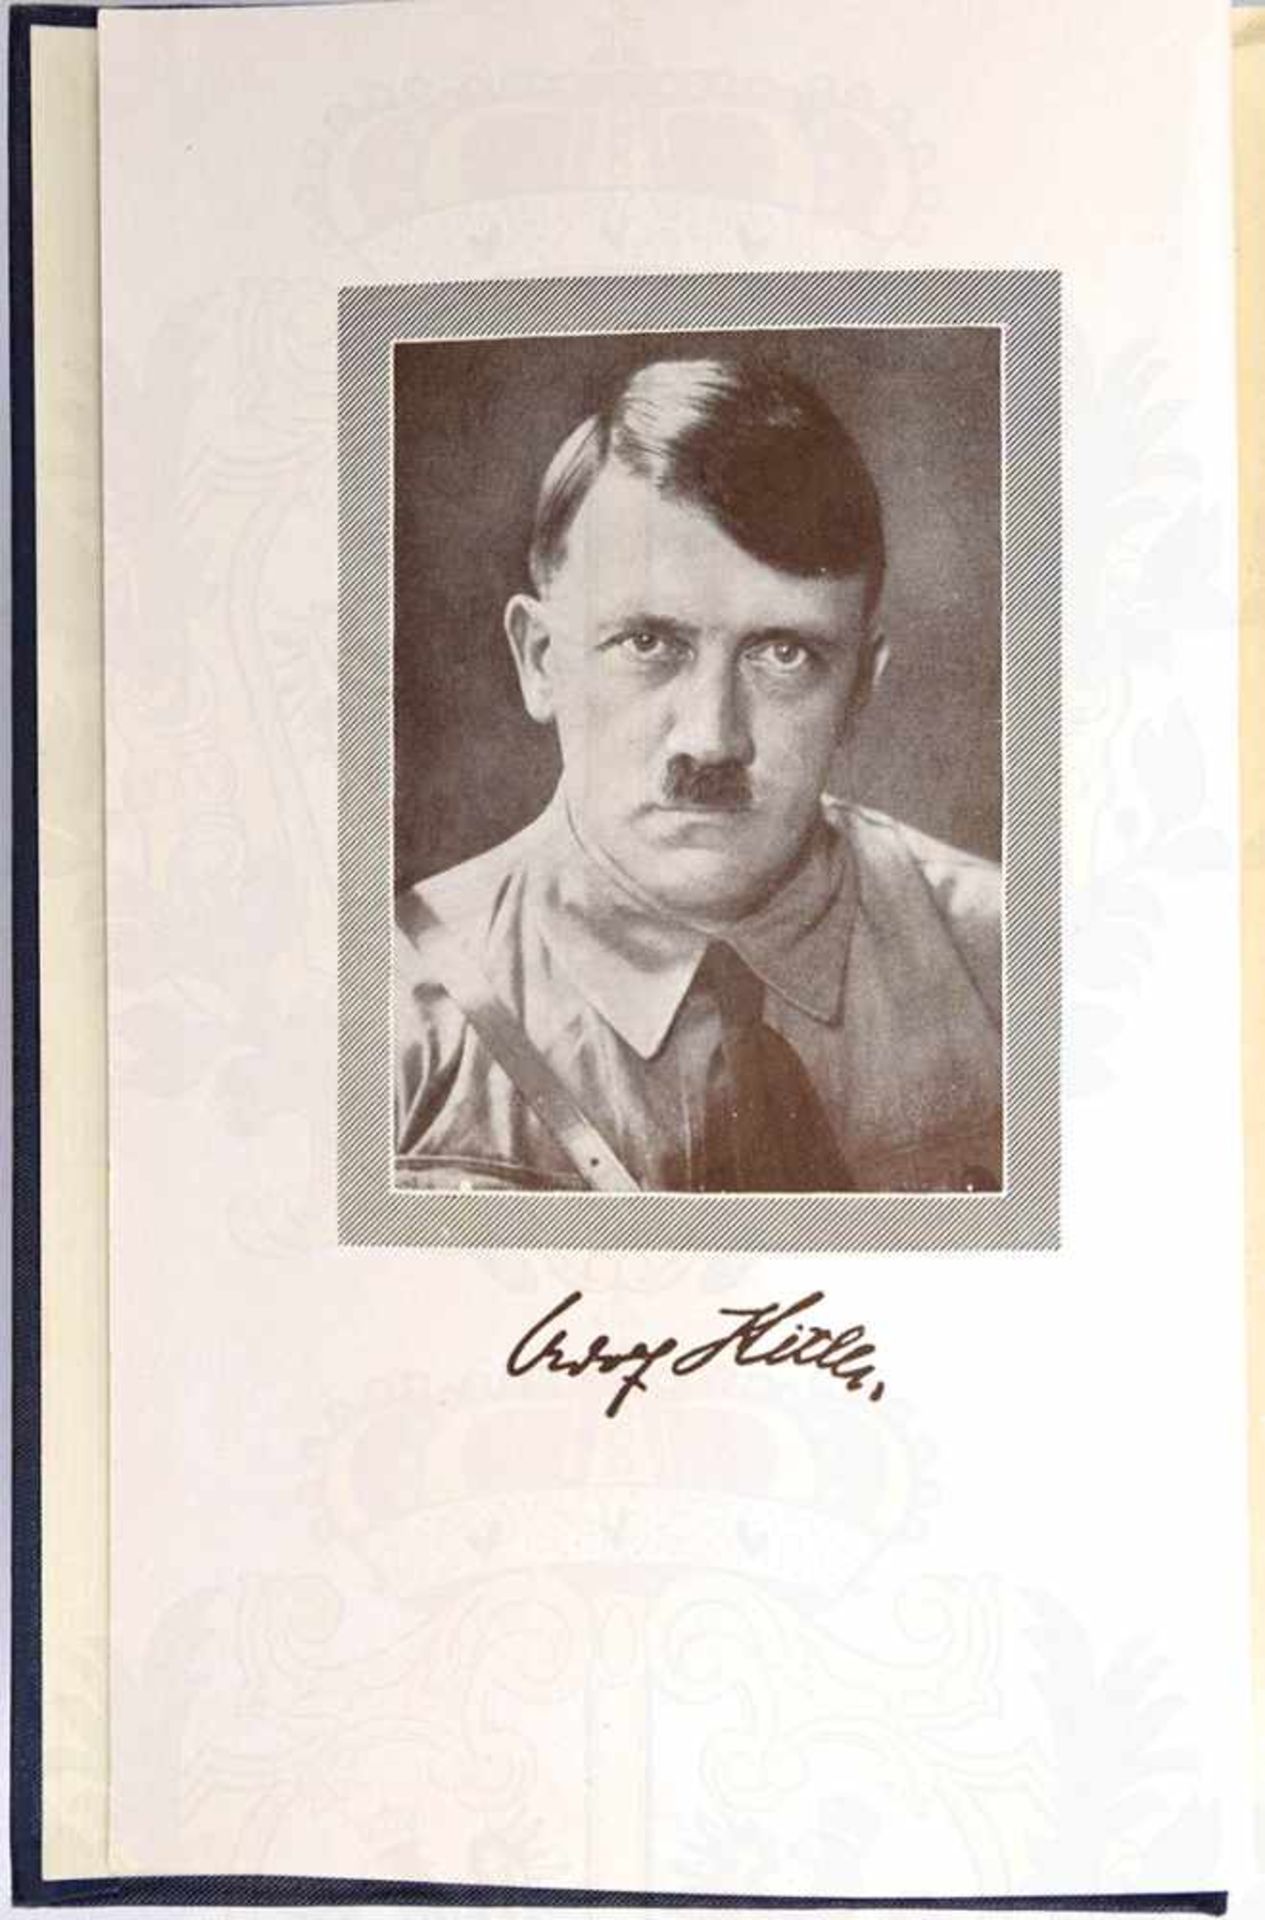 MEIN KAMPF, Adolf Hitler, Volksausgabe, Eher Verlag, 1935, Porträtbild, 781 S., Blanko-Vorsatz - Bild 2 aus 3